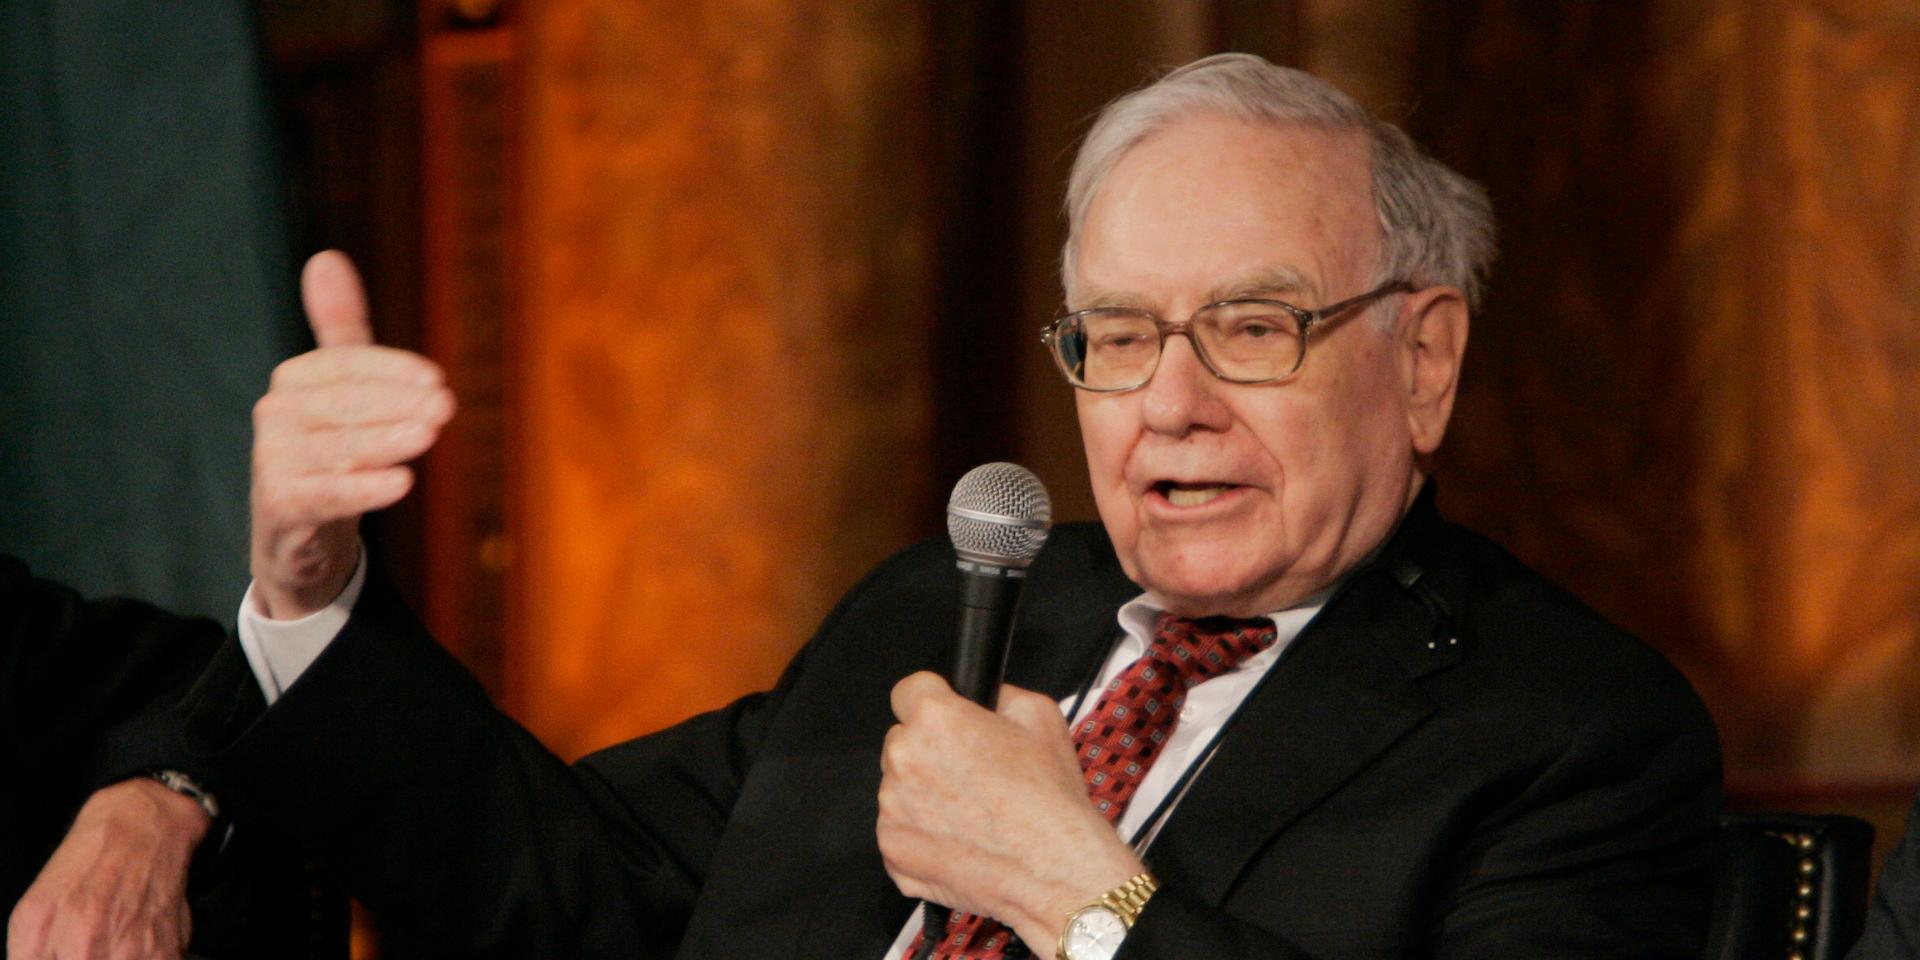 Warren Buffett är en av världens rikaste personer och en ihärdig bitcoinkritiker. 